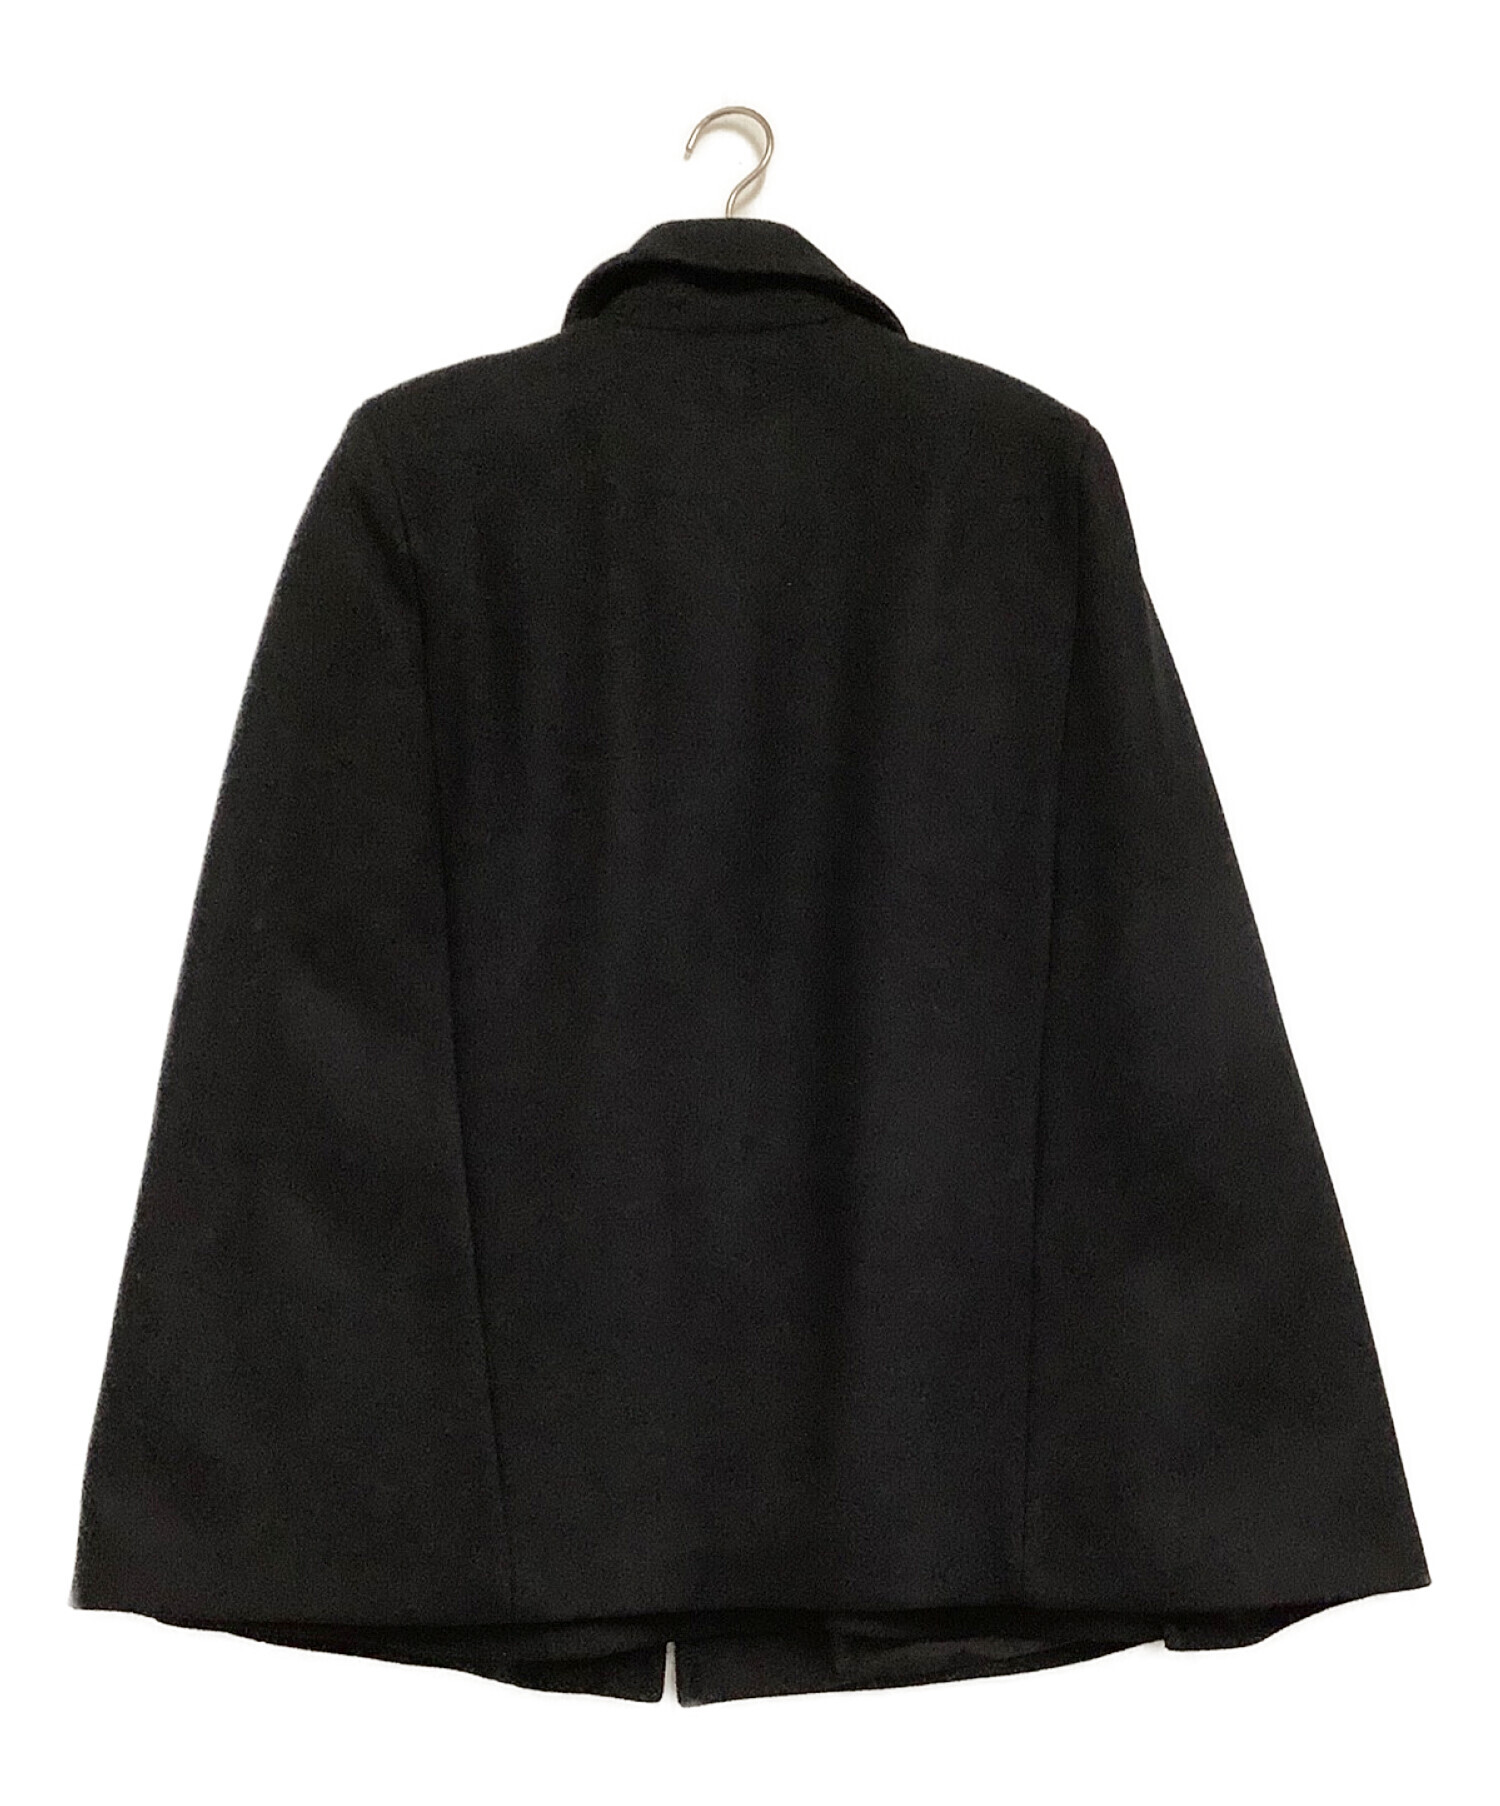 ZARA (ザラ) ウールブレンドボタンケープコート ブラック サイズ:６